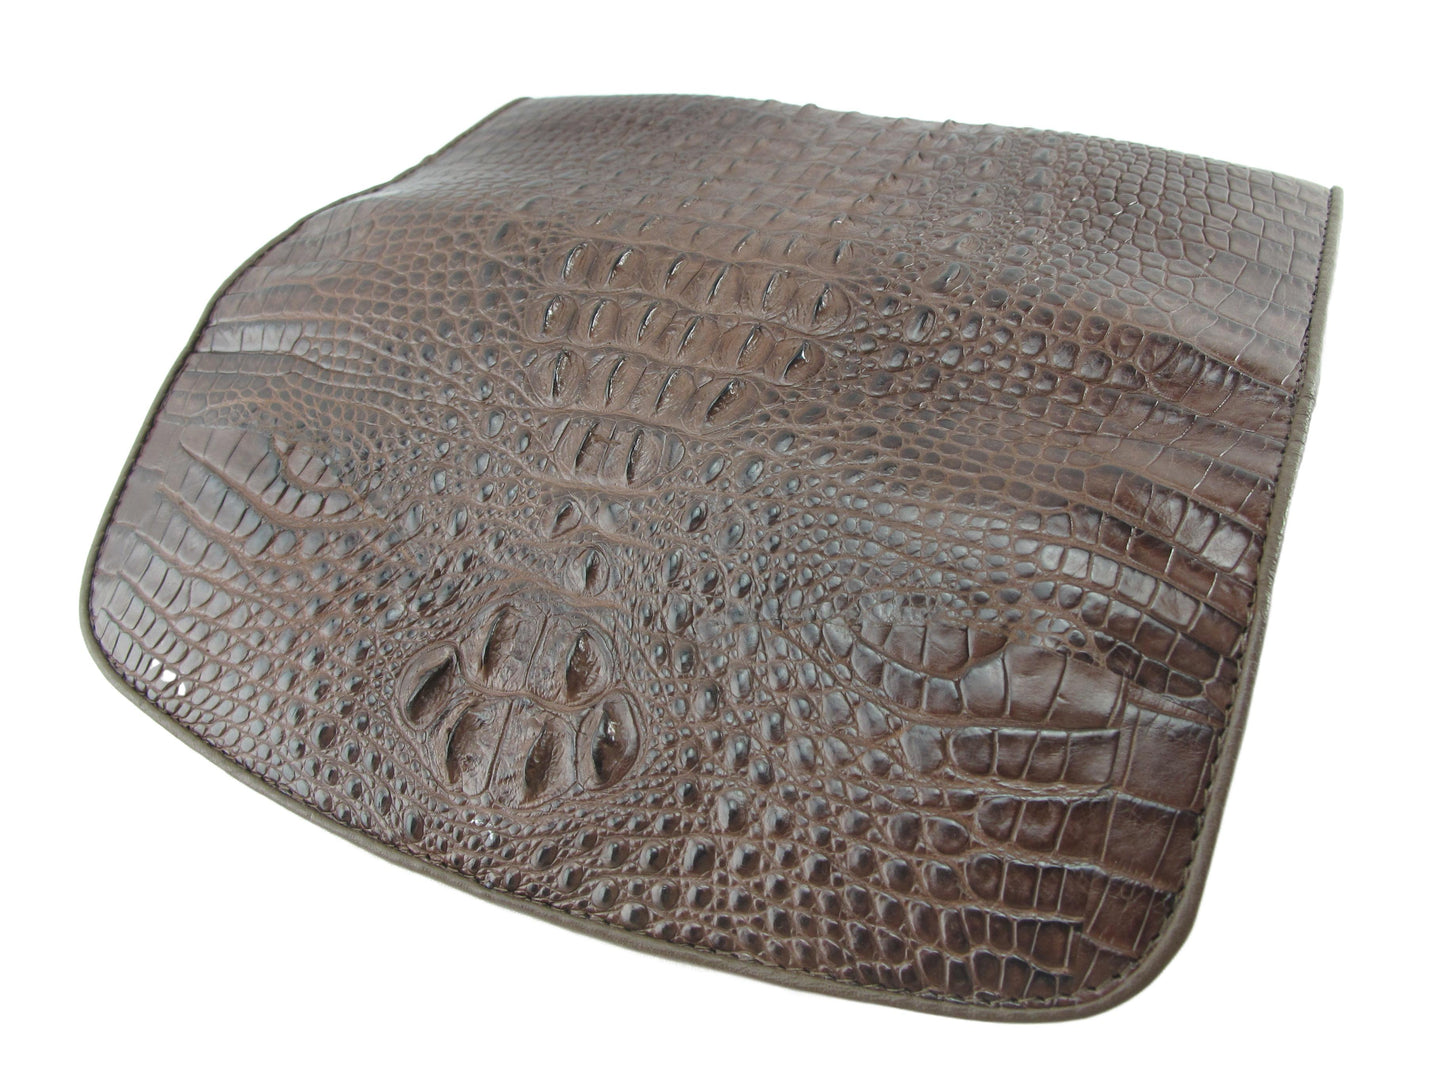 Genuine Crocodile Hornback Skin Leather Women's Trifold Clutch Wallet Purse